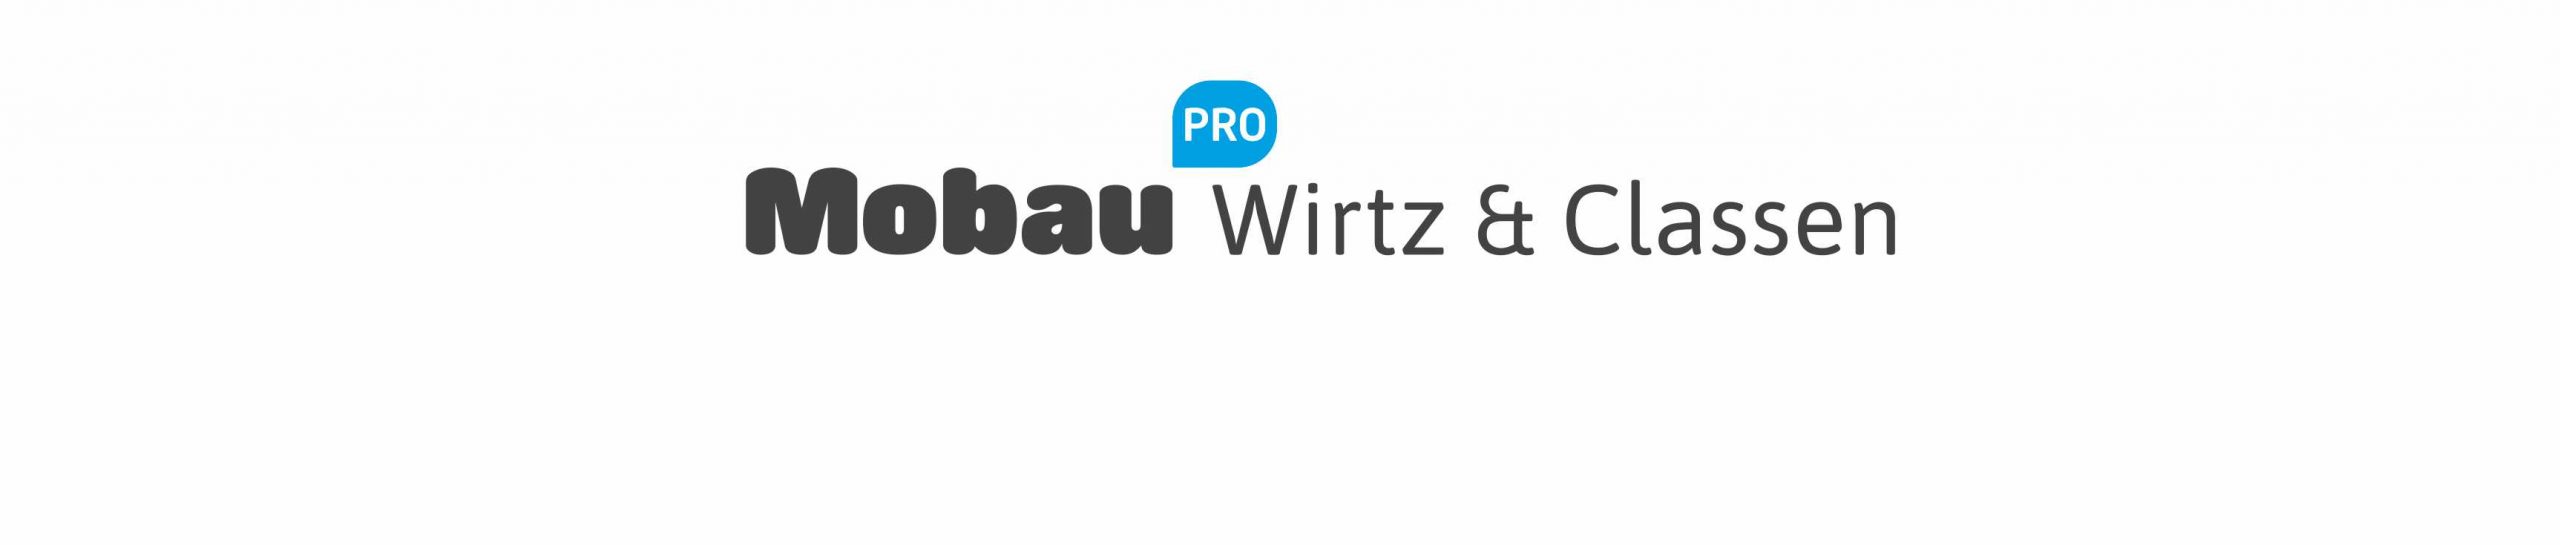 mobau Wirtz & Classen GmbH Co. KG BauPark - Mönchengladbach